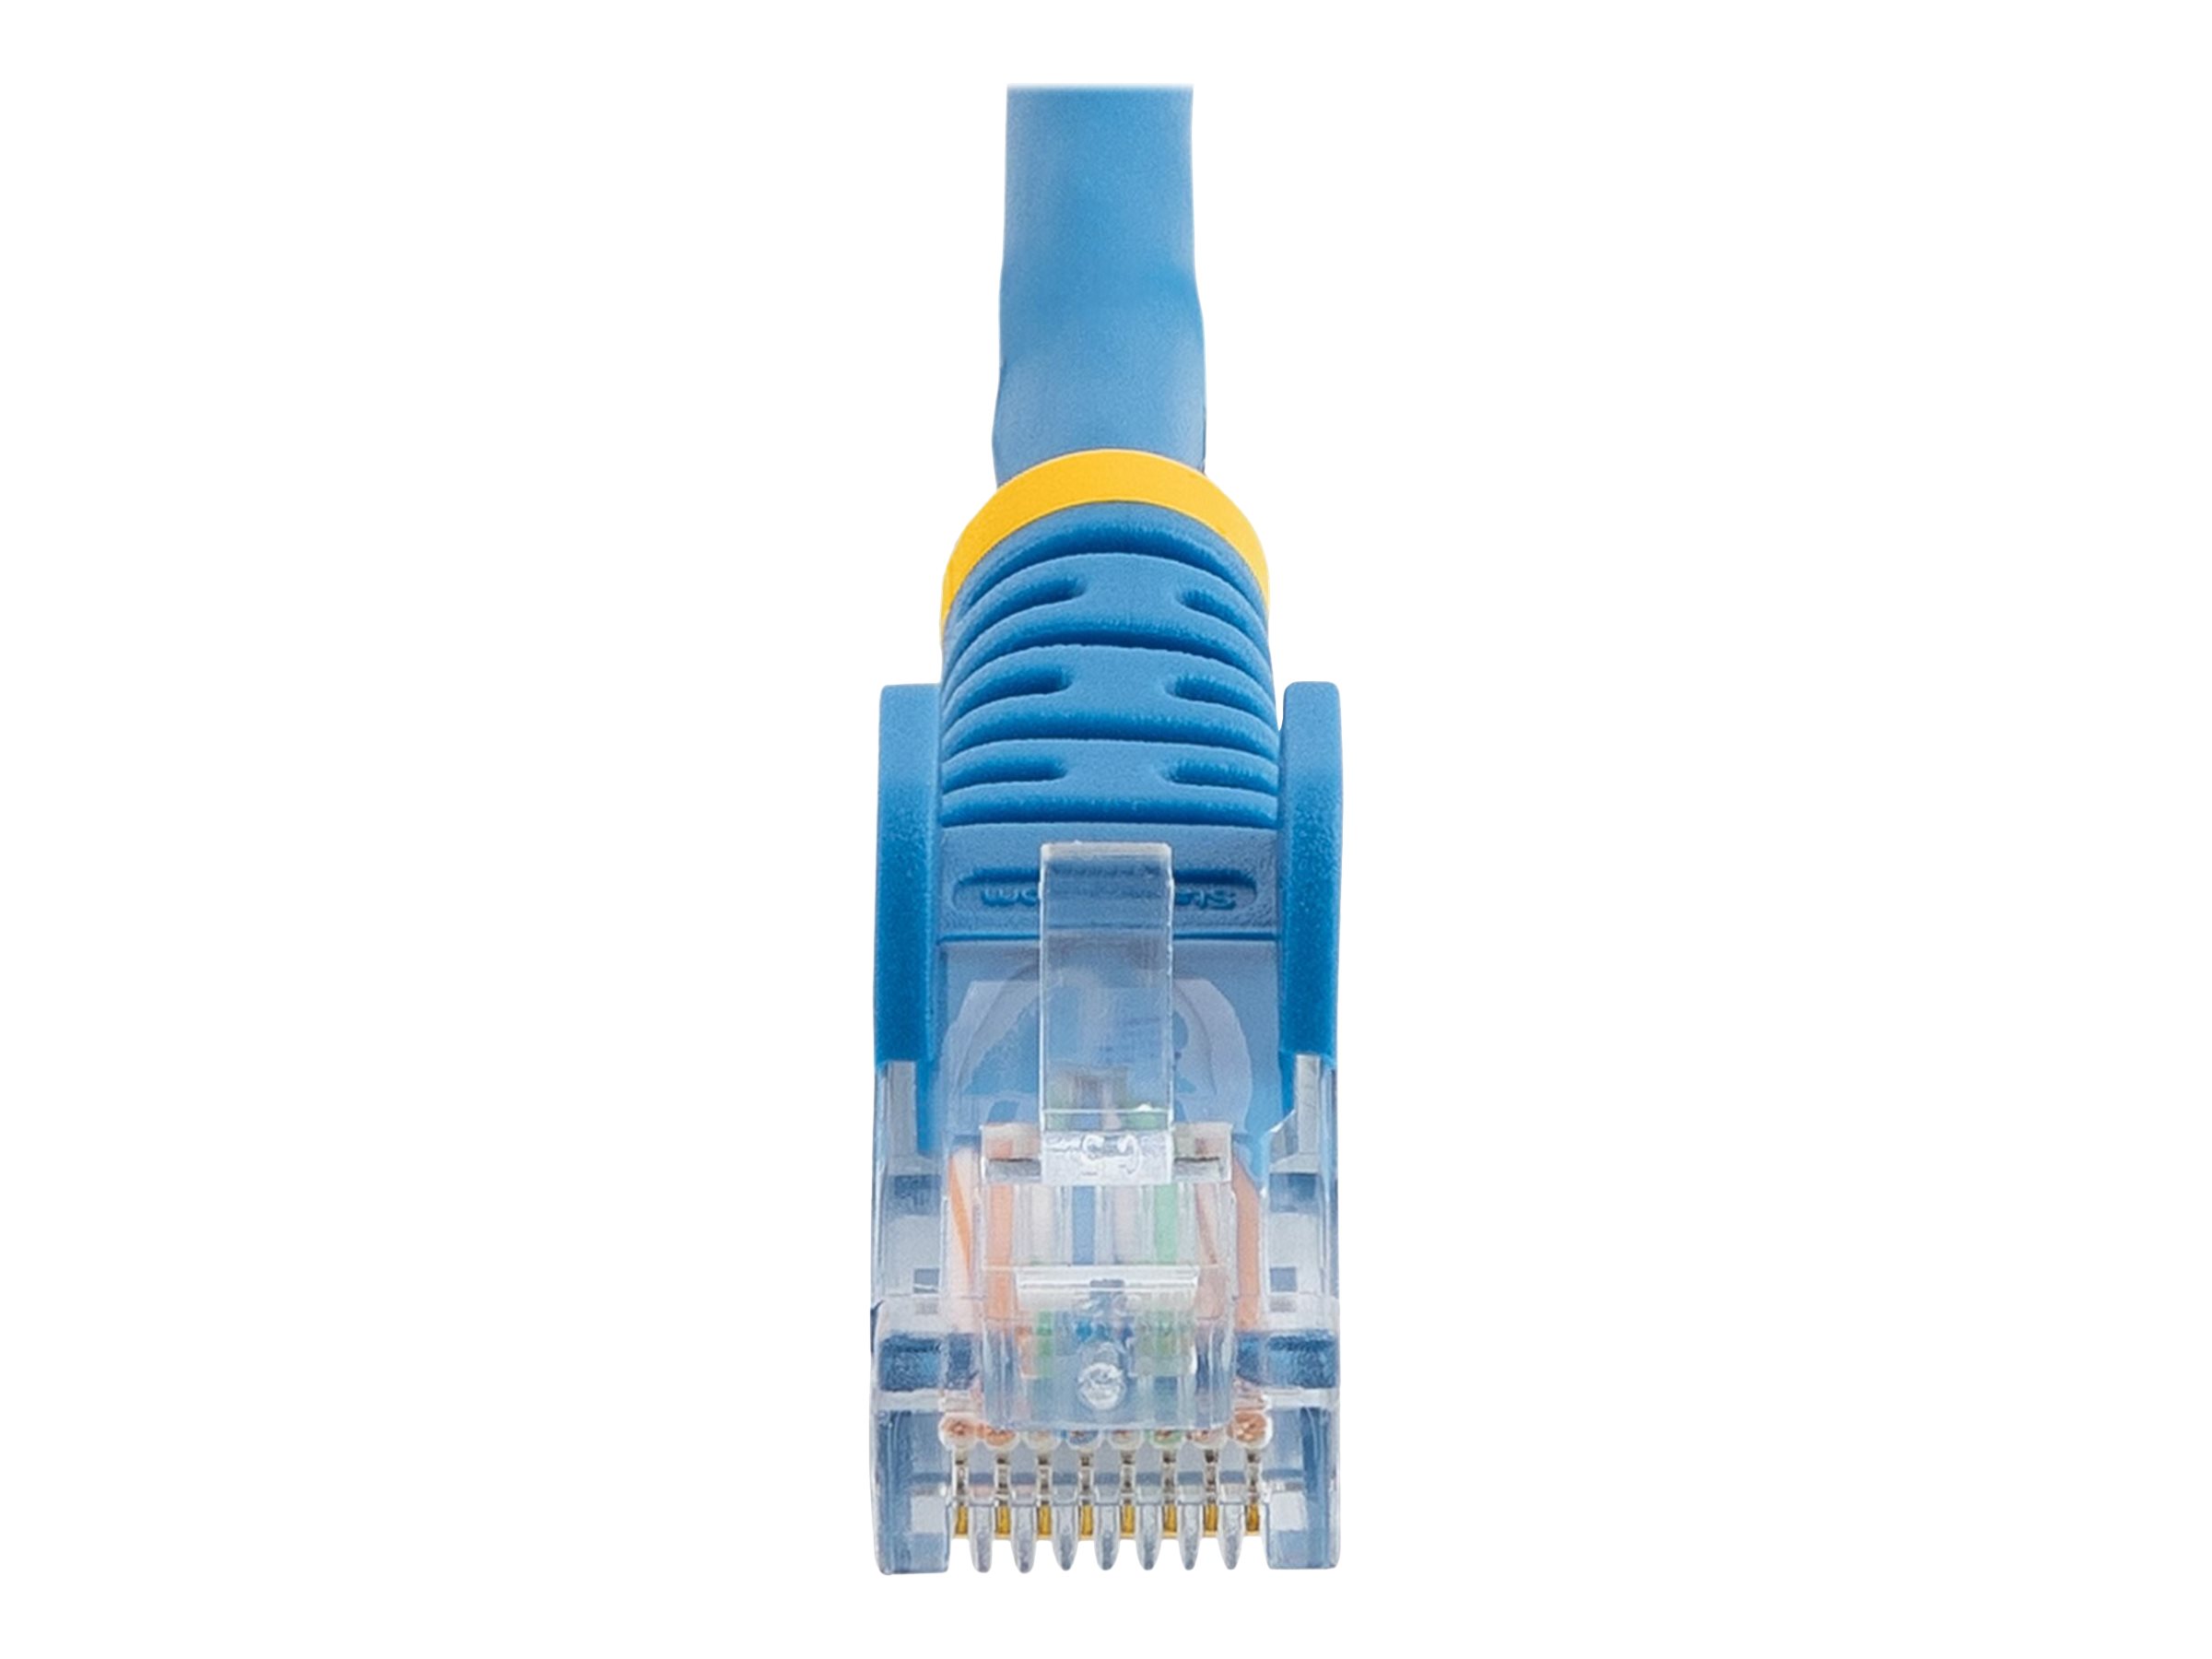 StarTech.com Câble réseau Cat5e UTP sans crochet - 50 cm Bleu - Cordon Ethernet RJ45 anti-accroc - Câble patch - Cordon de raccordement - RJ-45 (M) pour RJ-45 (M) - 50 cm - UTP - CAT 5e - sans crochet, bloqué - bleu - 45PAT50CMBL - Câbles à paire torsadée